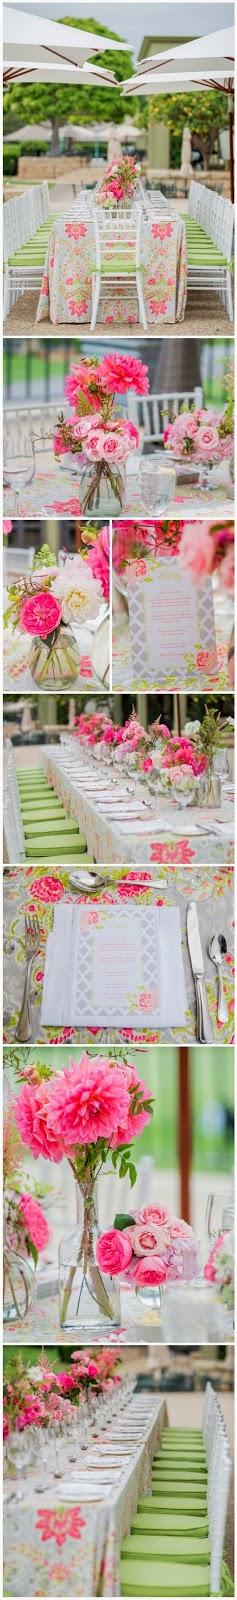 My Wedding Inspiration: verde y rosa para banquetes primaverales